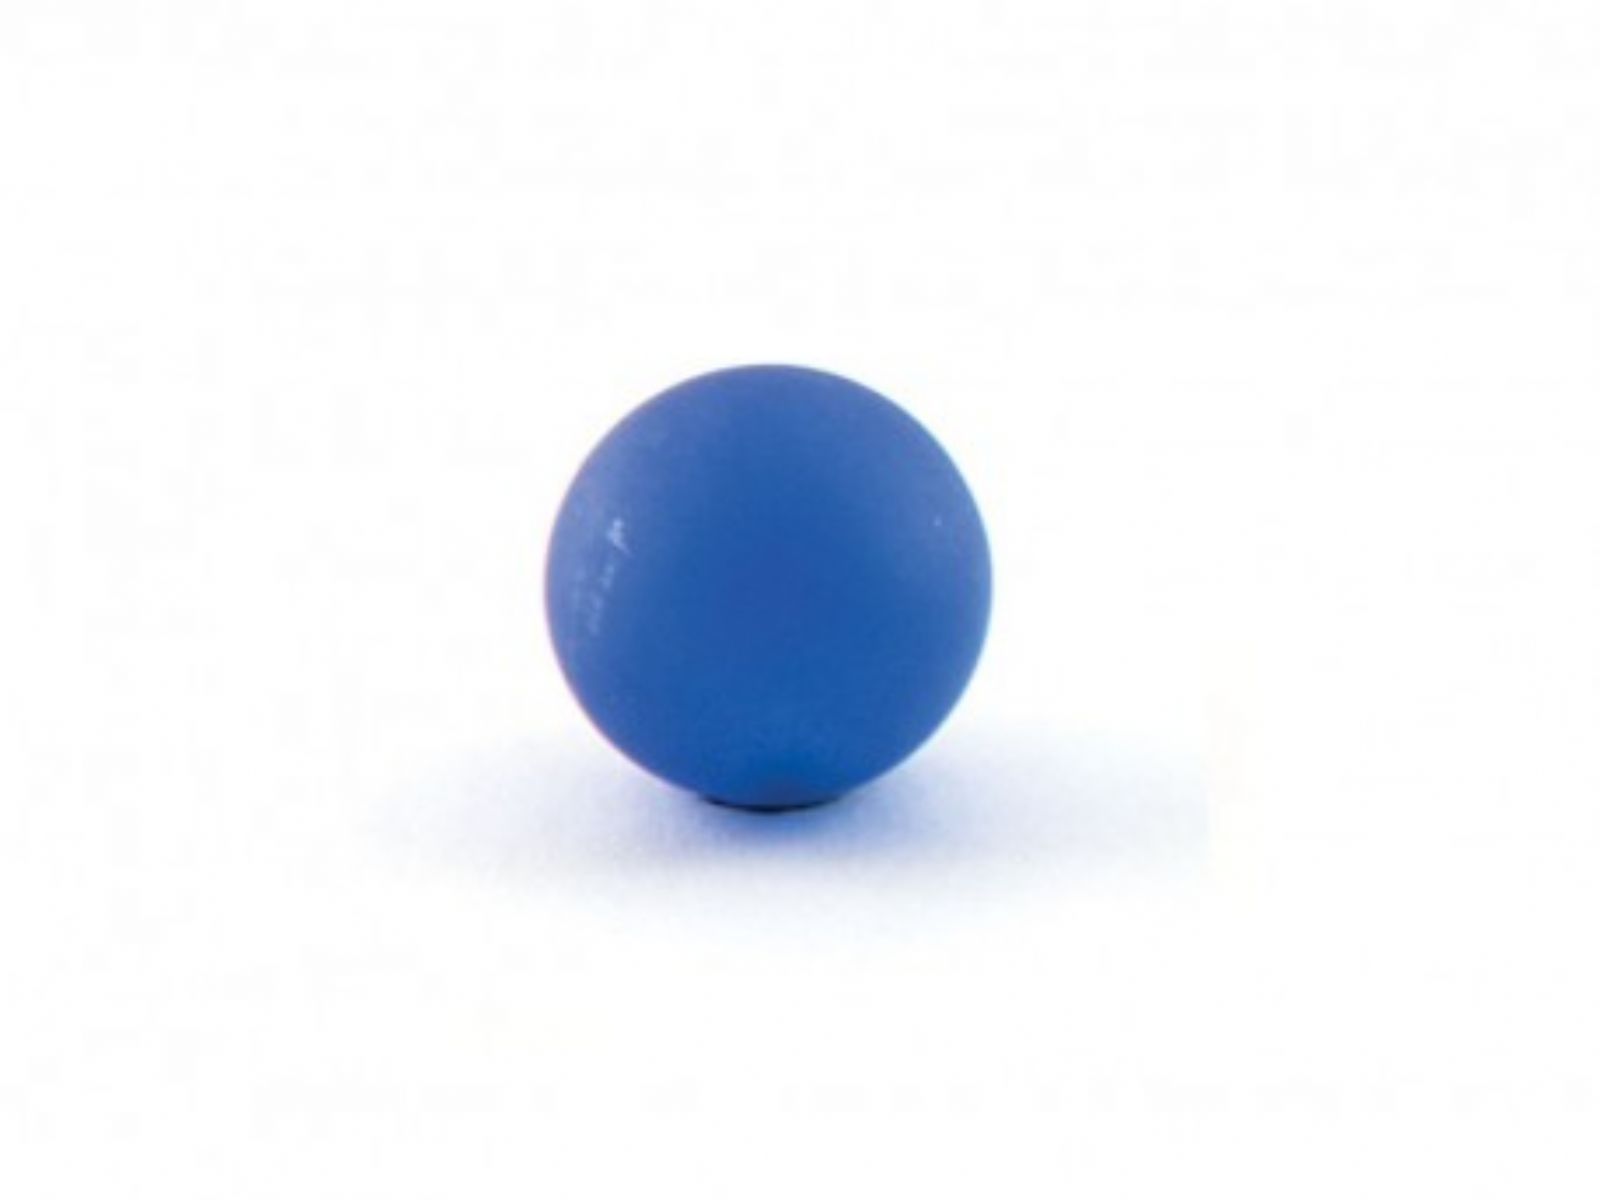 Porta sapone da bagno linea Elite in ottone cromato e finali in vetro colorato - Porta sapone Elite blu satinato